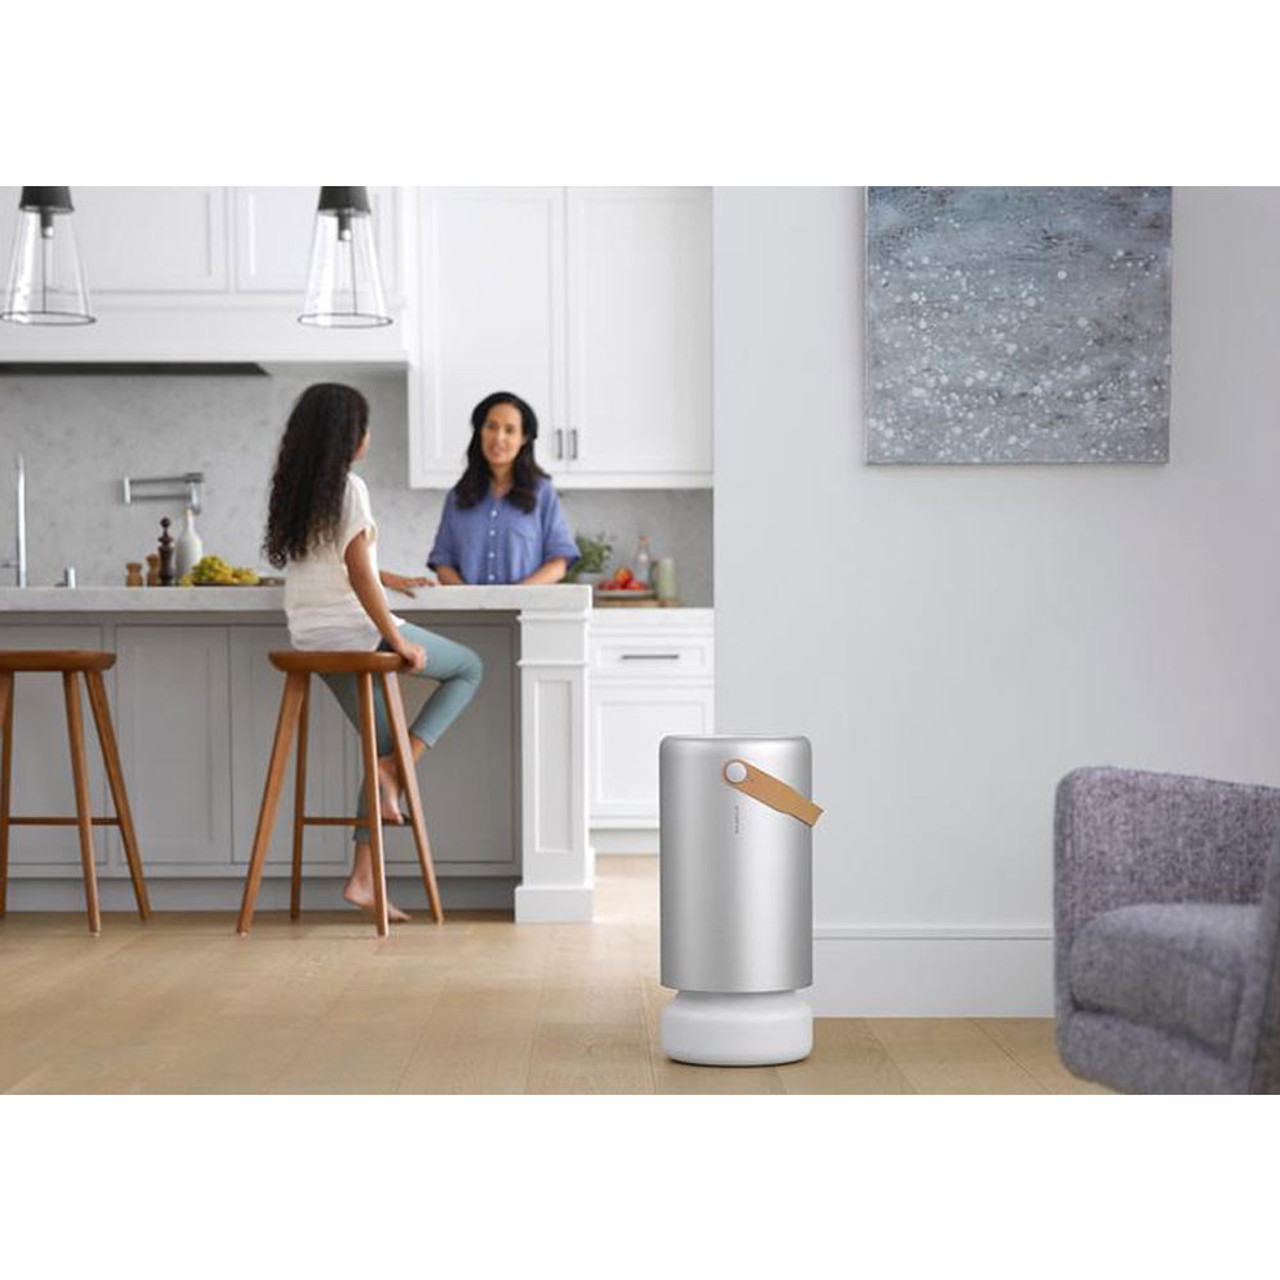 Air Mini+ Purifier  The Best PECO-HEPA Air Cleaner for Bedrooms - Molekule